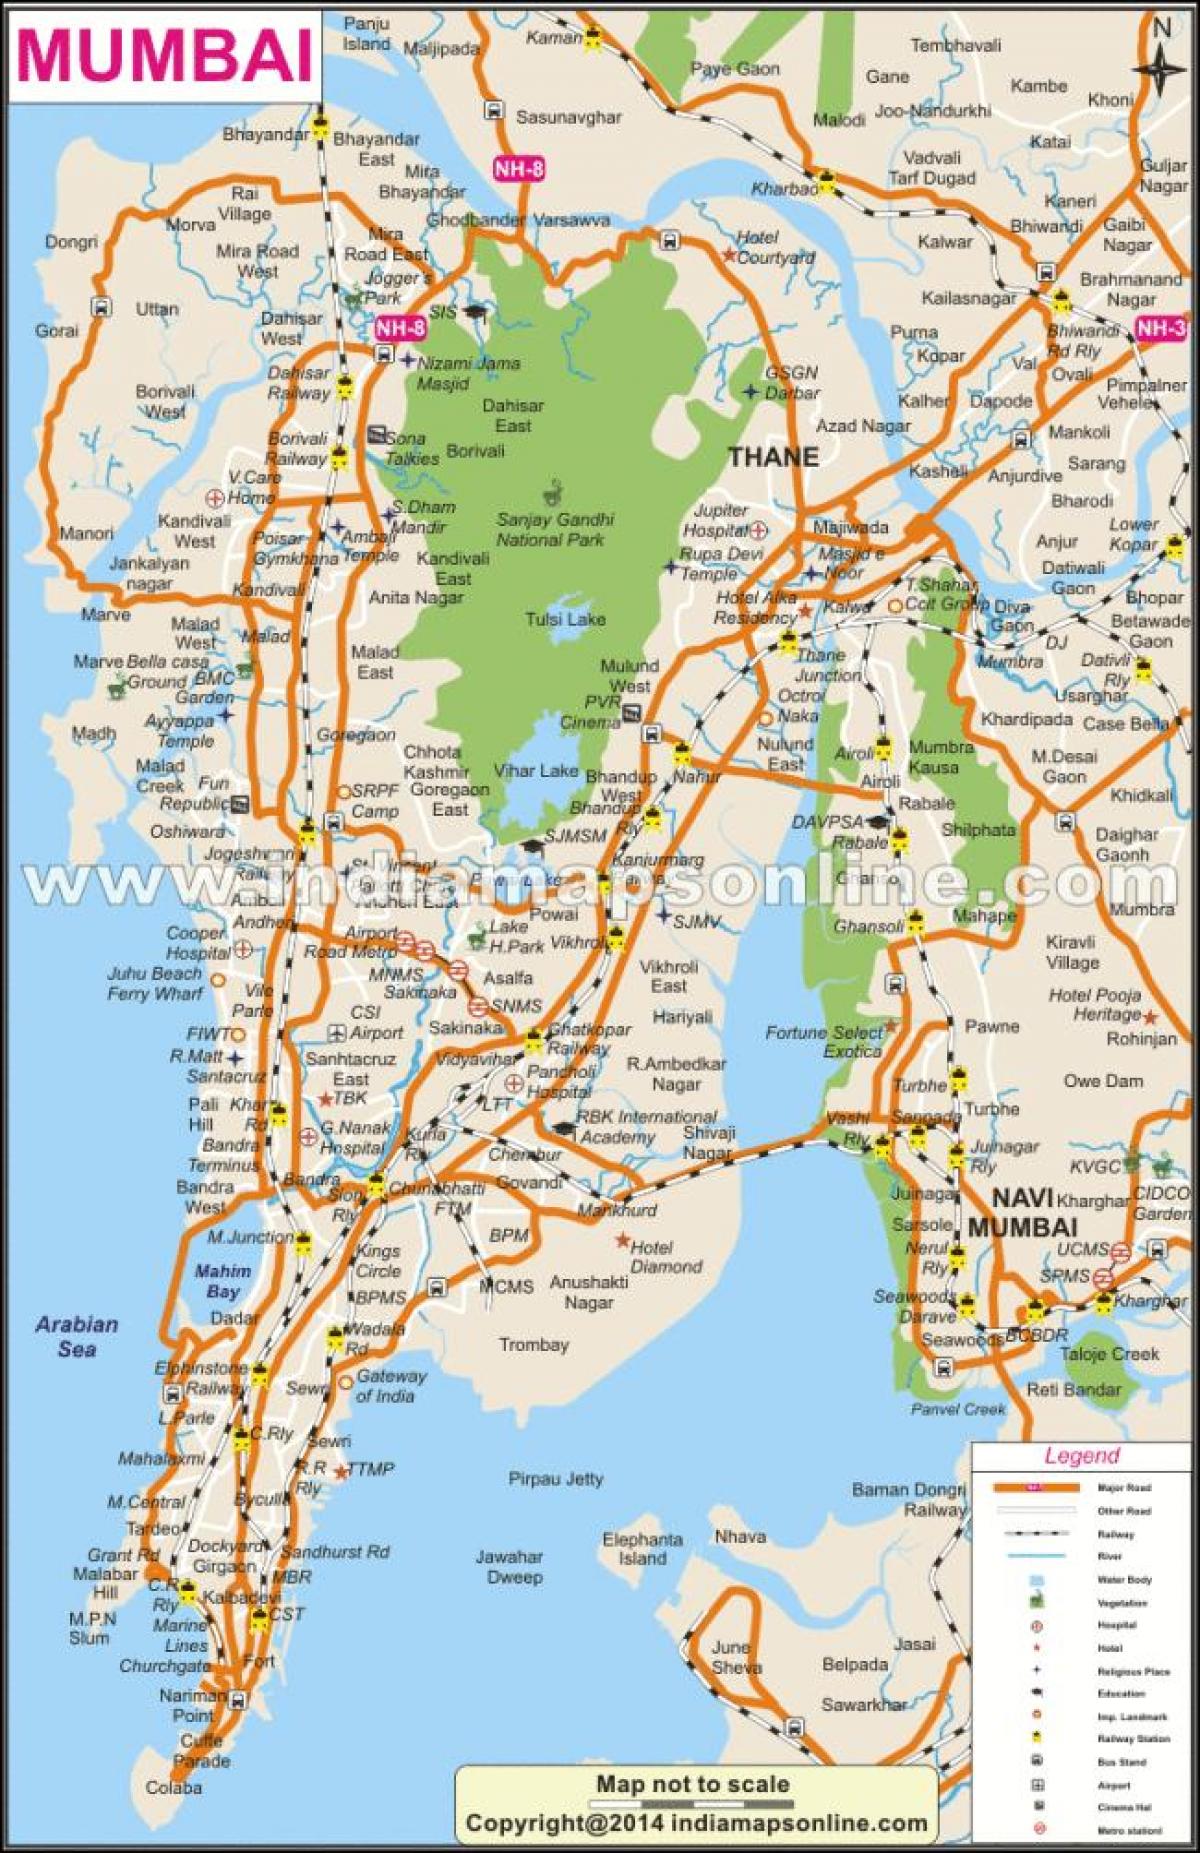 الخريطة كاملة من مومباي